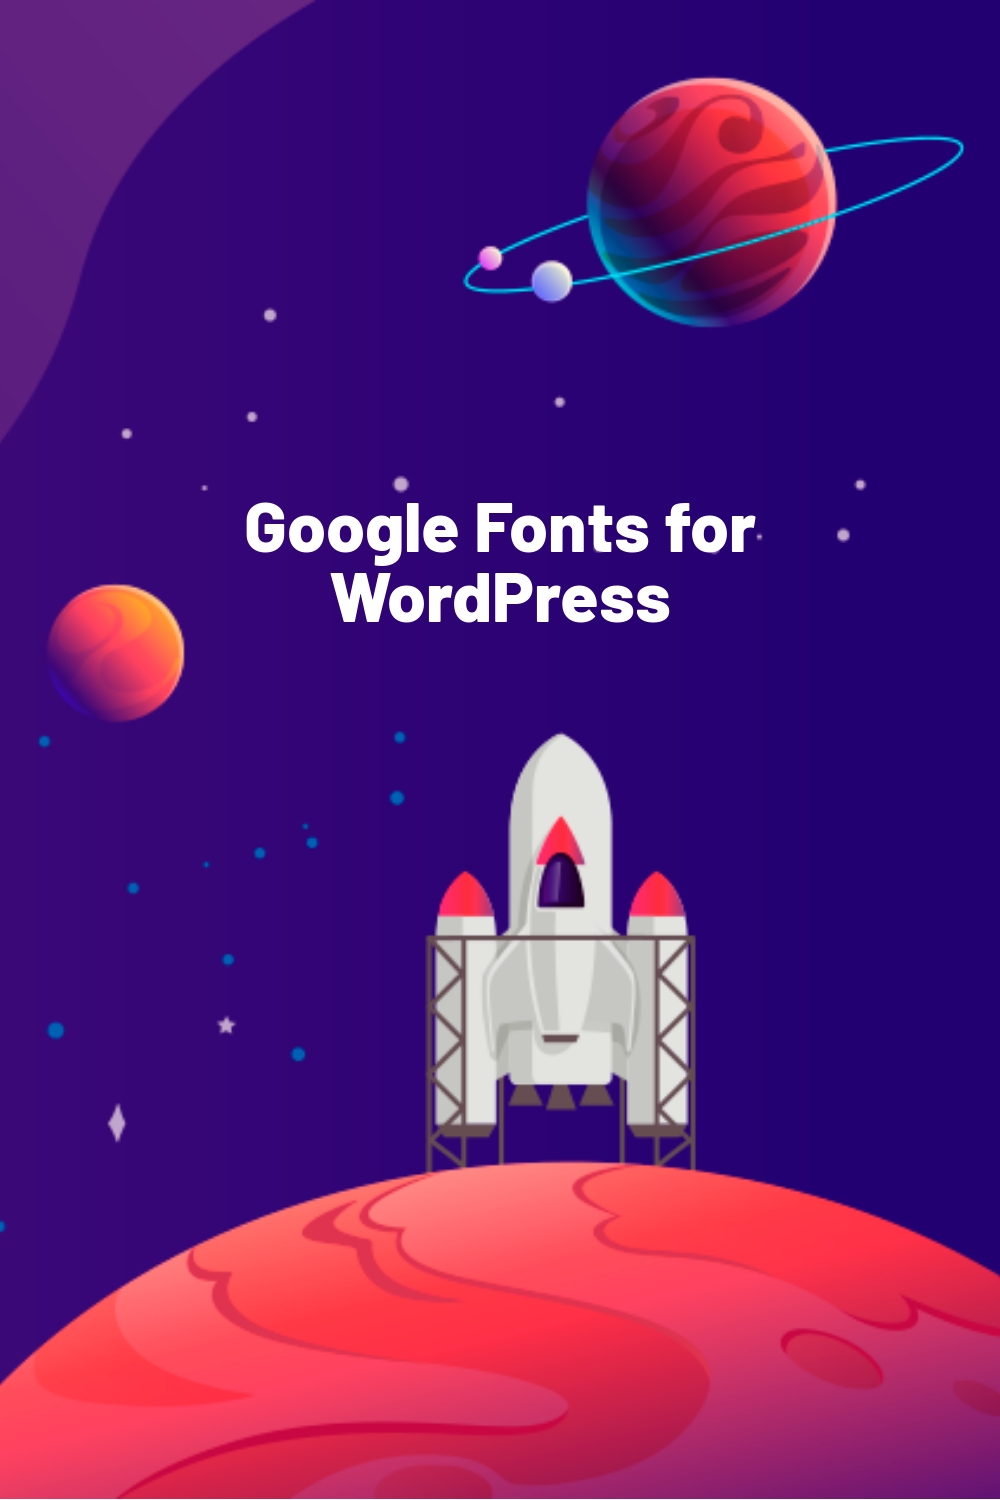 Google Fonts for WordPress